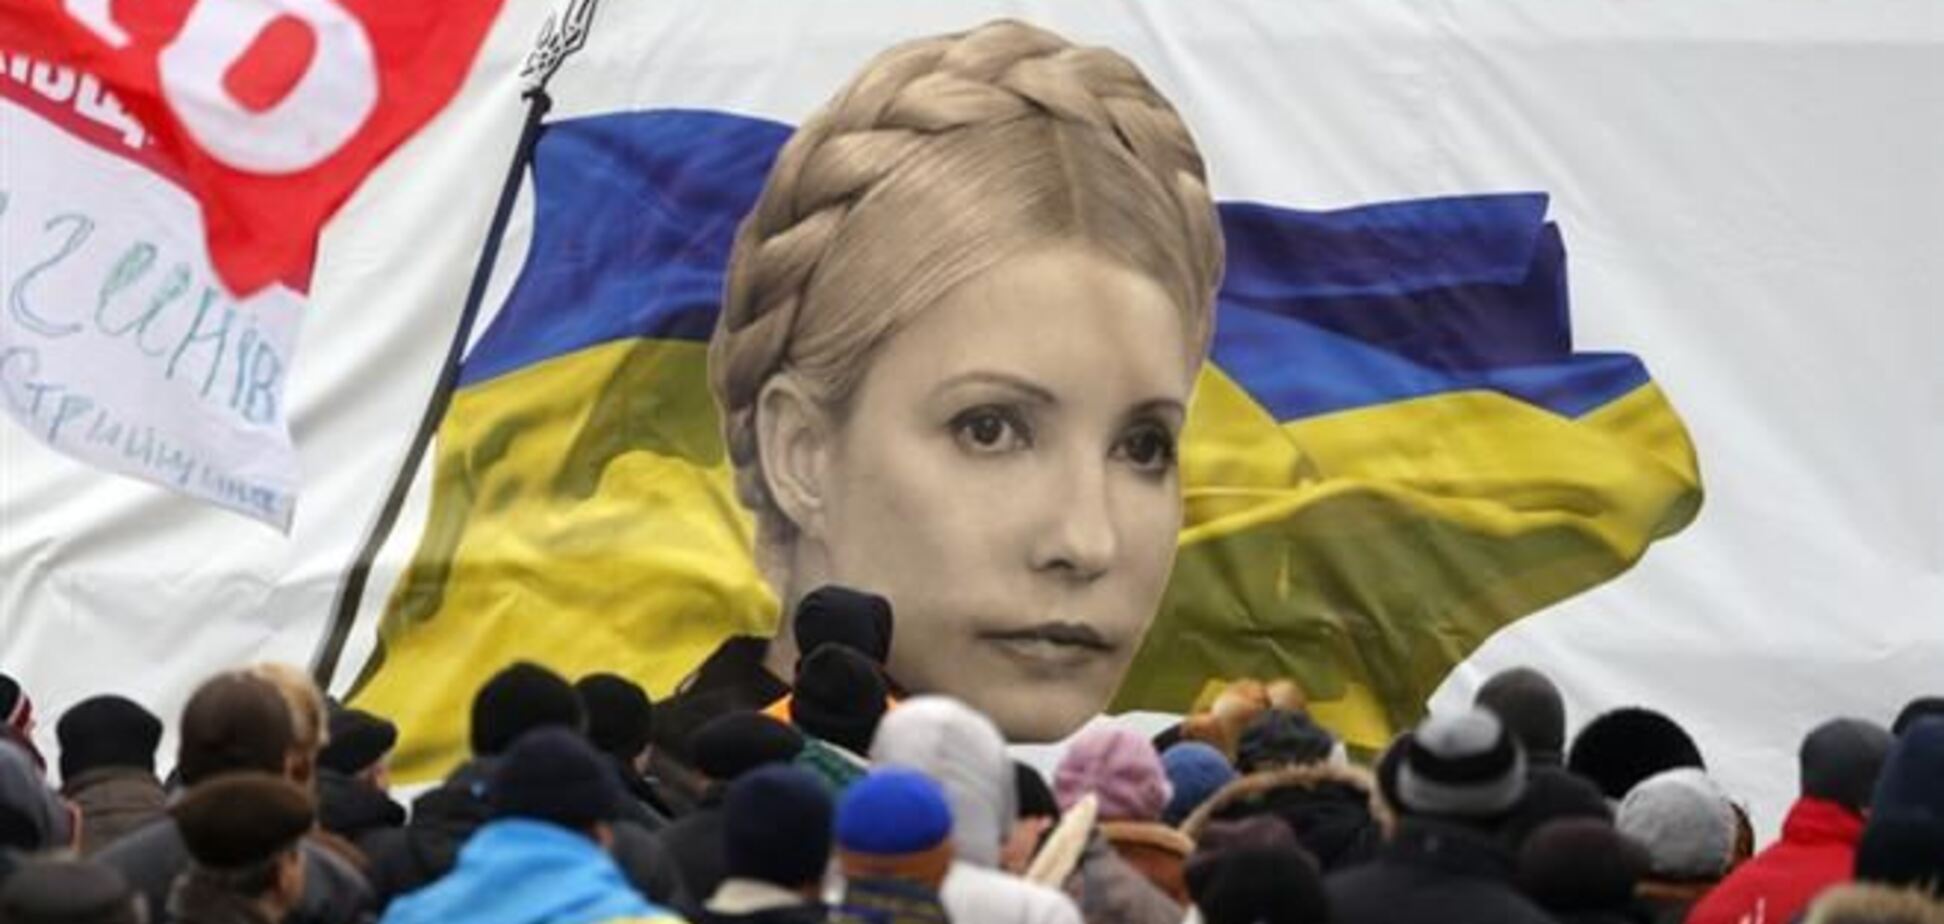 Петиция об освобождении Тимошенко собрала 100 тыс. подписей